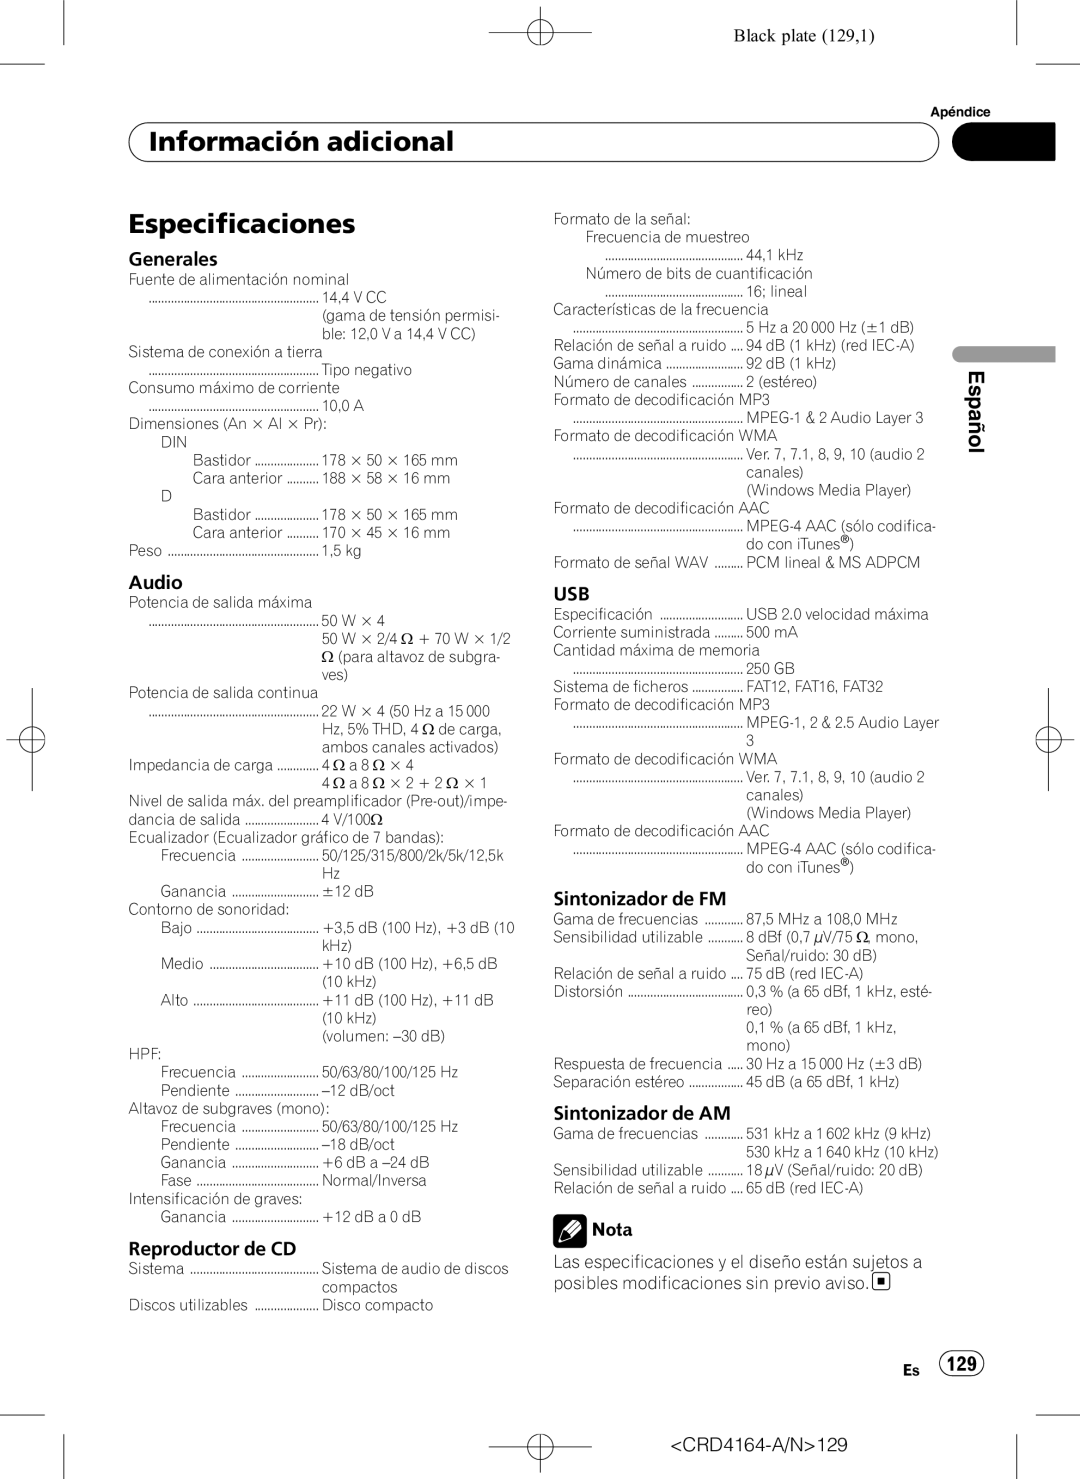 Pioneer DEH-P7950UB operation manual Especificaciones, Black plate 129,1, Información adicional, Español 